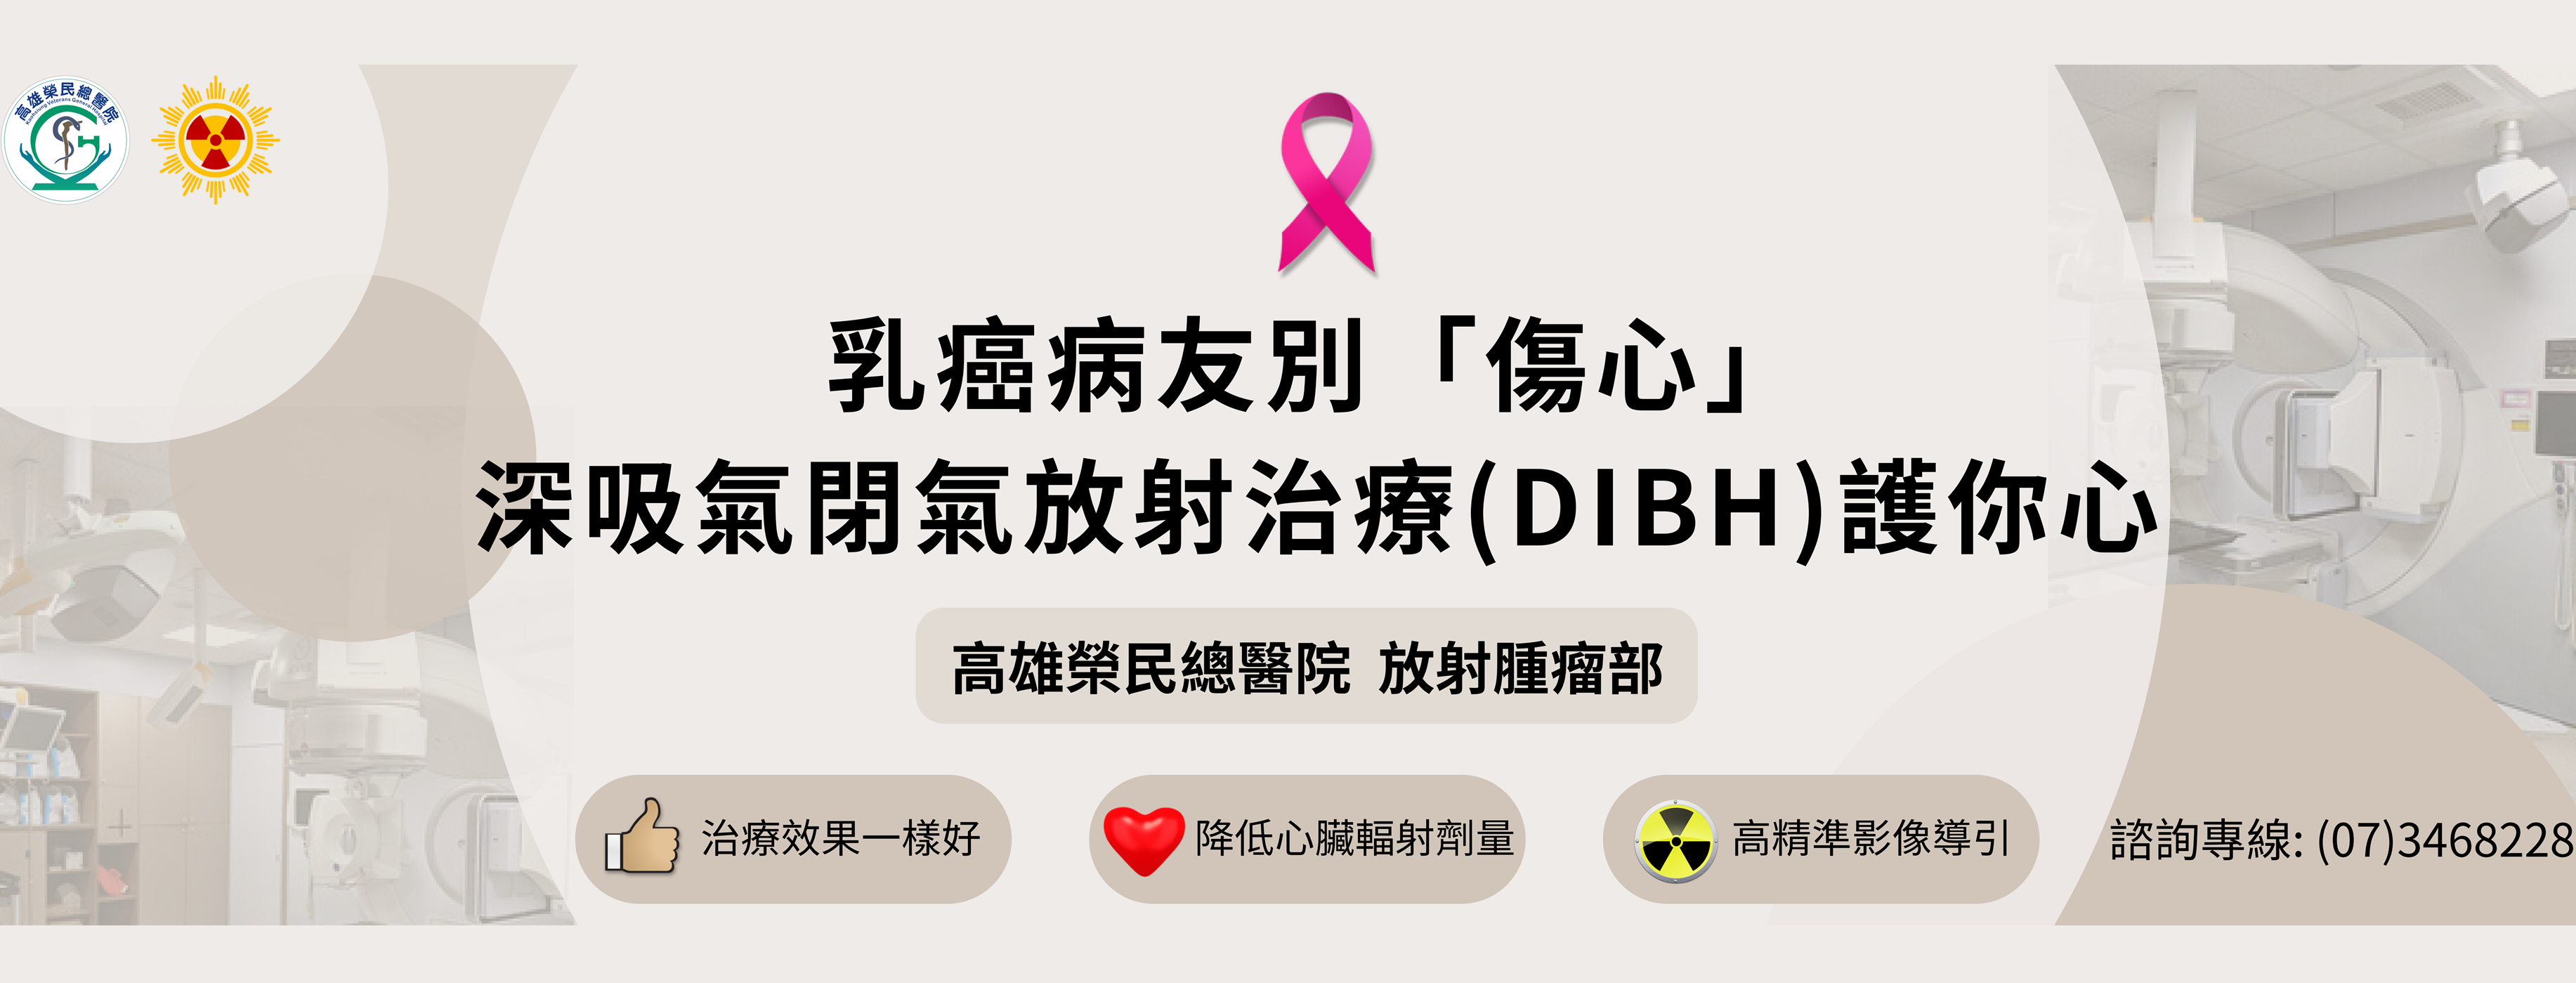 1121017「放射腫瘤部」 - 乳癌病友別「傷心」 深吸氣閉氣放射治療(DIBH)護你心(圖片)